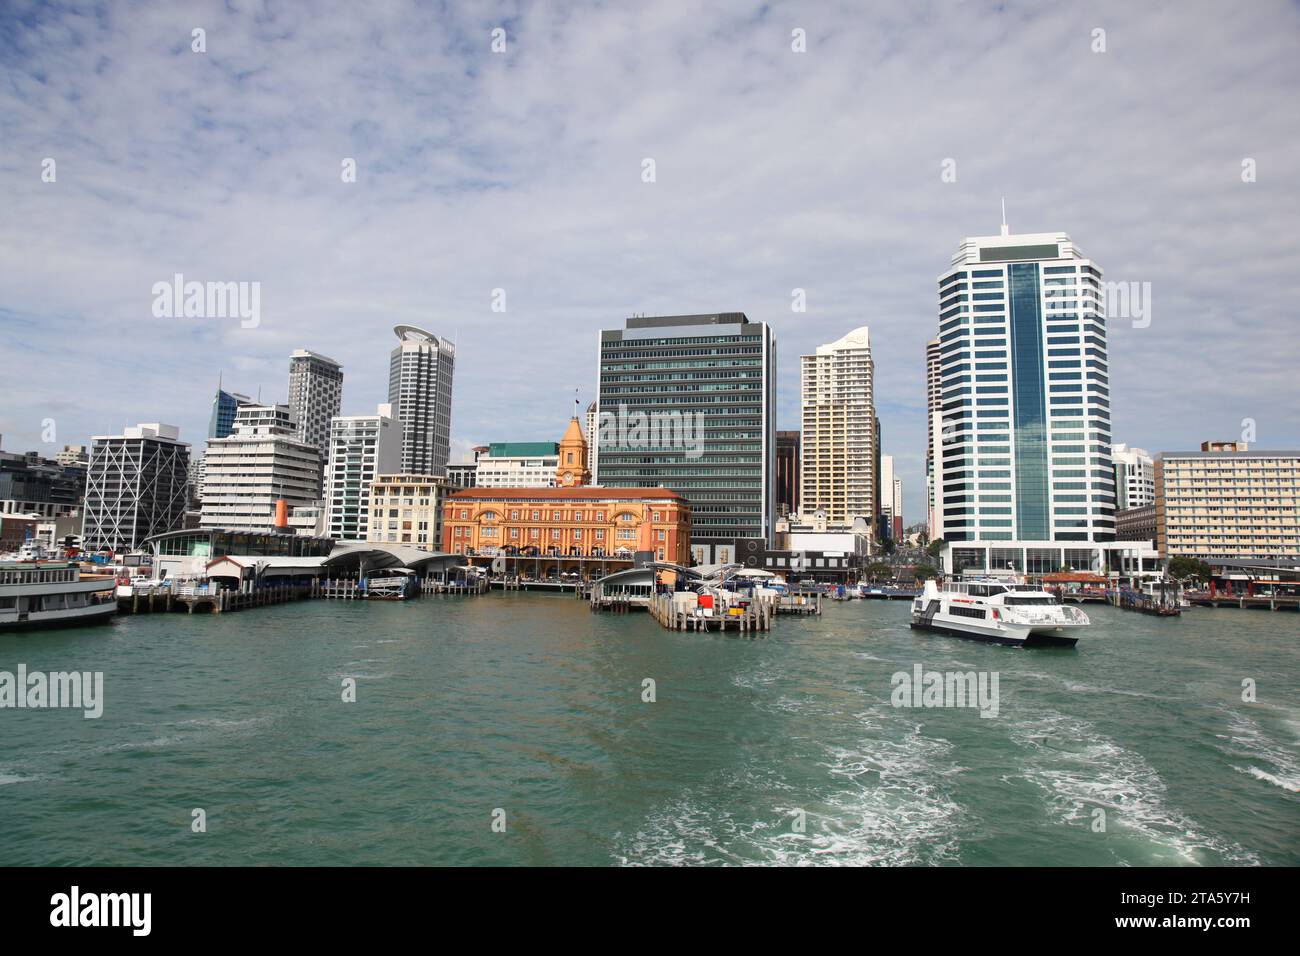 Paisaje urbano de Auckland desde el agua adyacente a Princes Wharf. Auckland es la ciudad más grande de Nueva Zelanda y es famosa por su ubicación junto al mar y su li Foto de stock